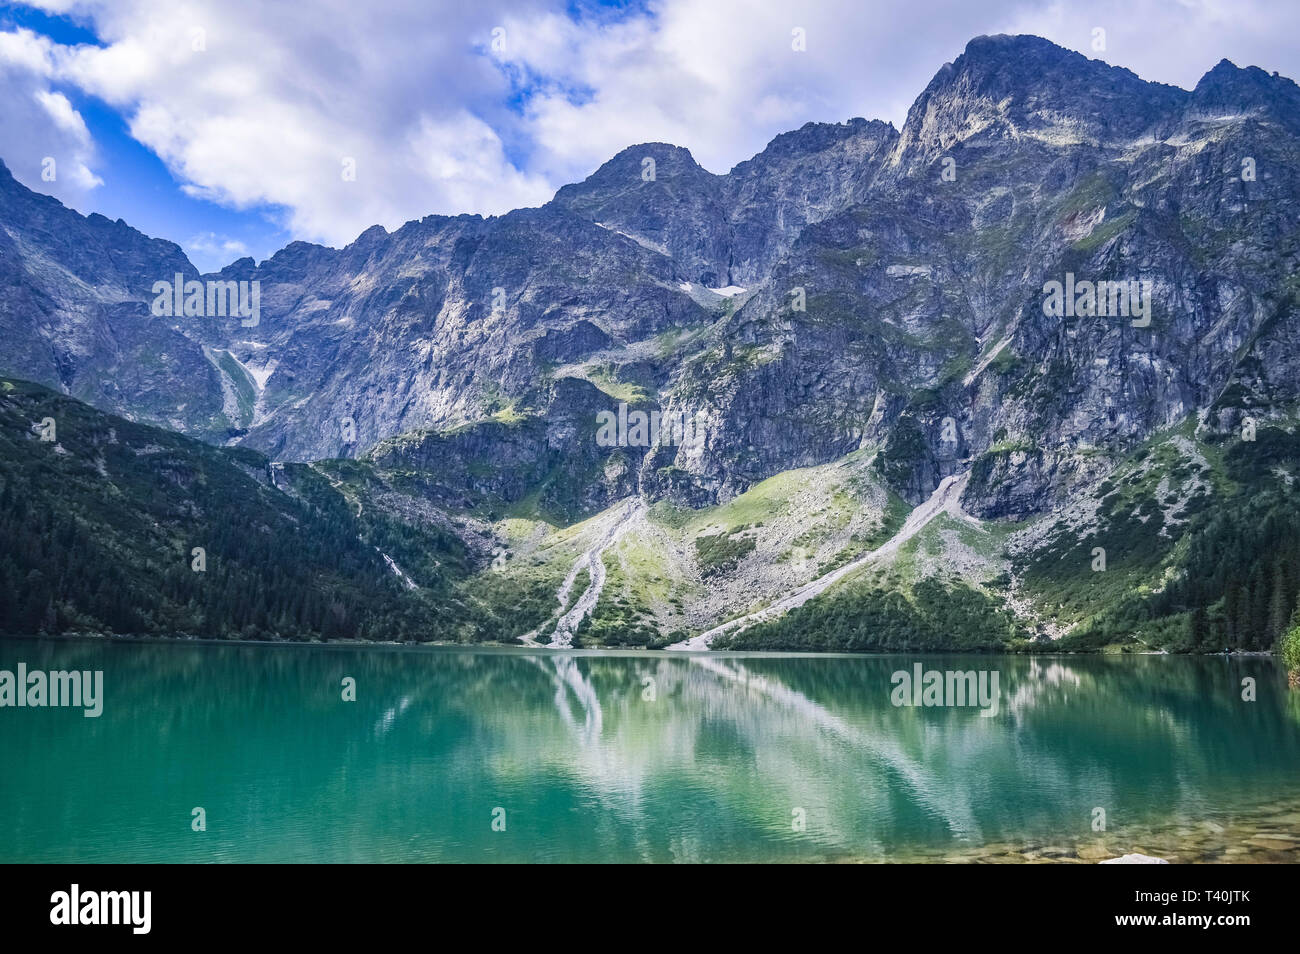 The beautiful lake of Morskie Oko in the Tatra Mountains, near Zakopane, Poland Stock Photo